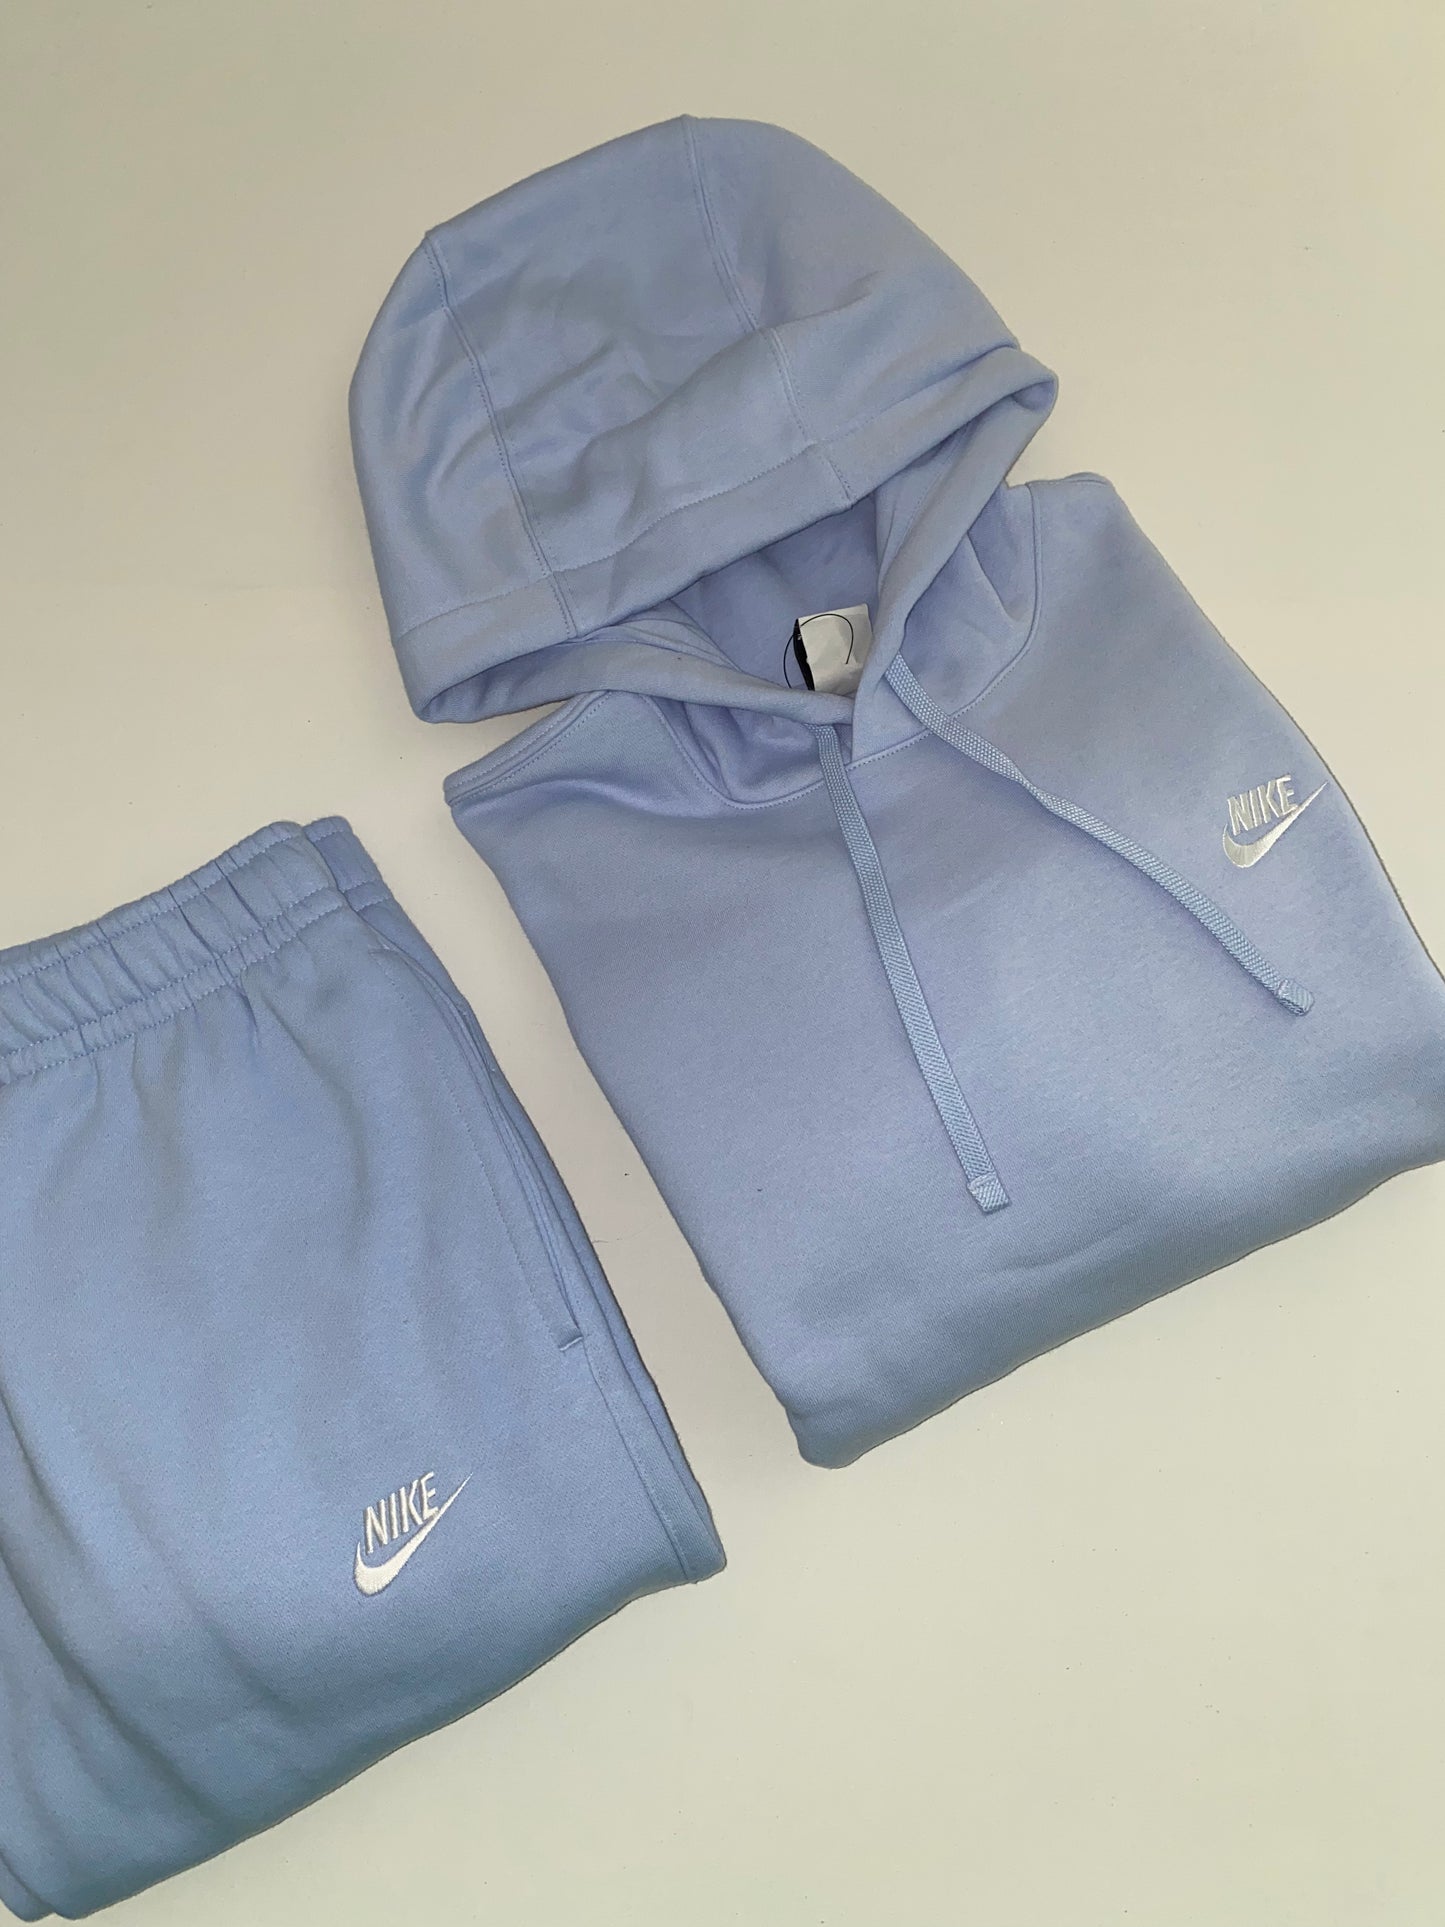 Ensemble Nike bleu glacial – Fripe store